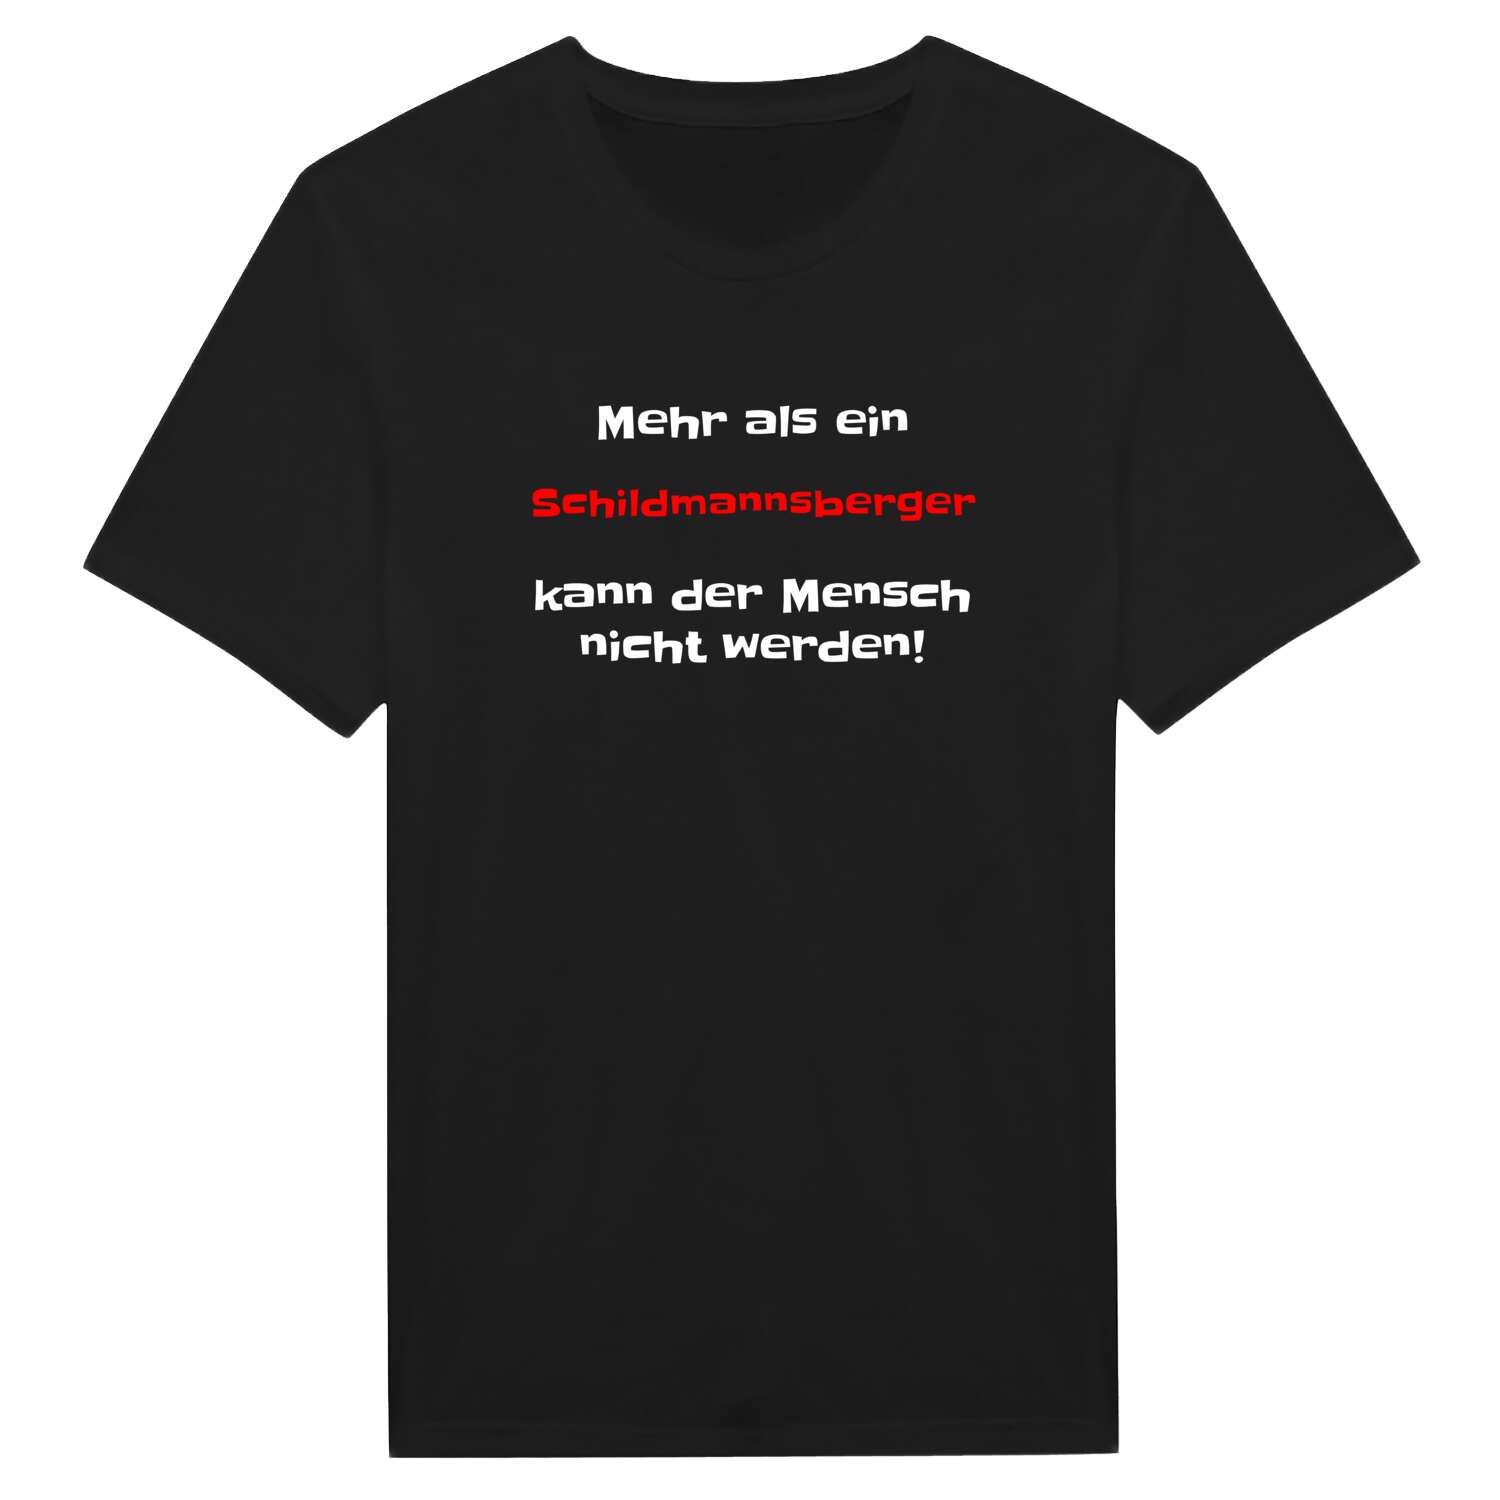 Schildmannsberg T-Shirt »Mehr als ein«